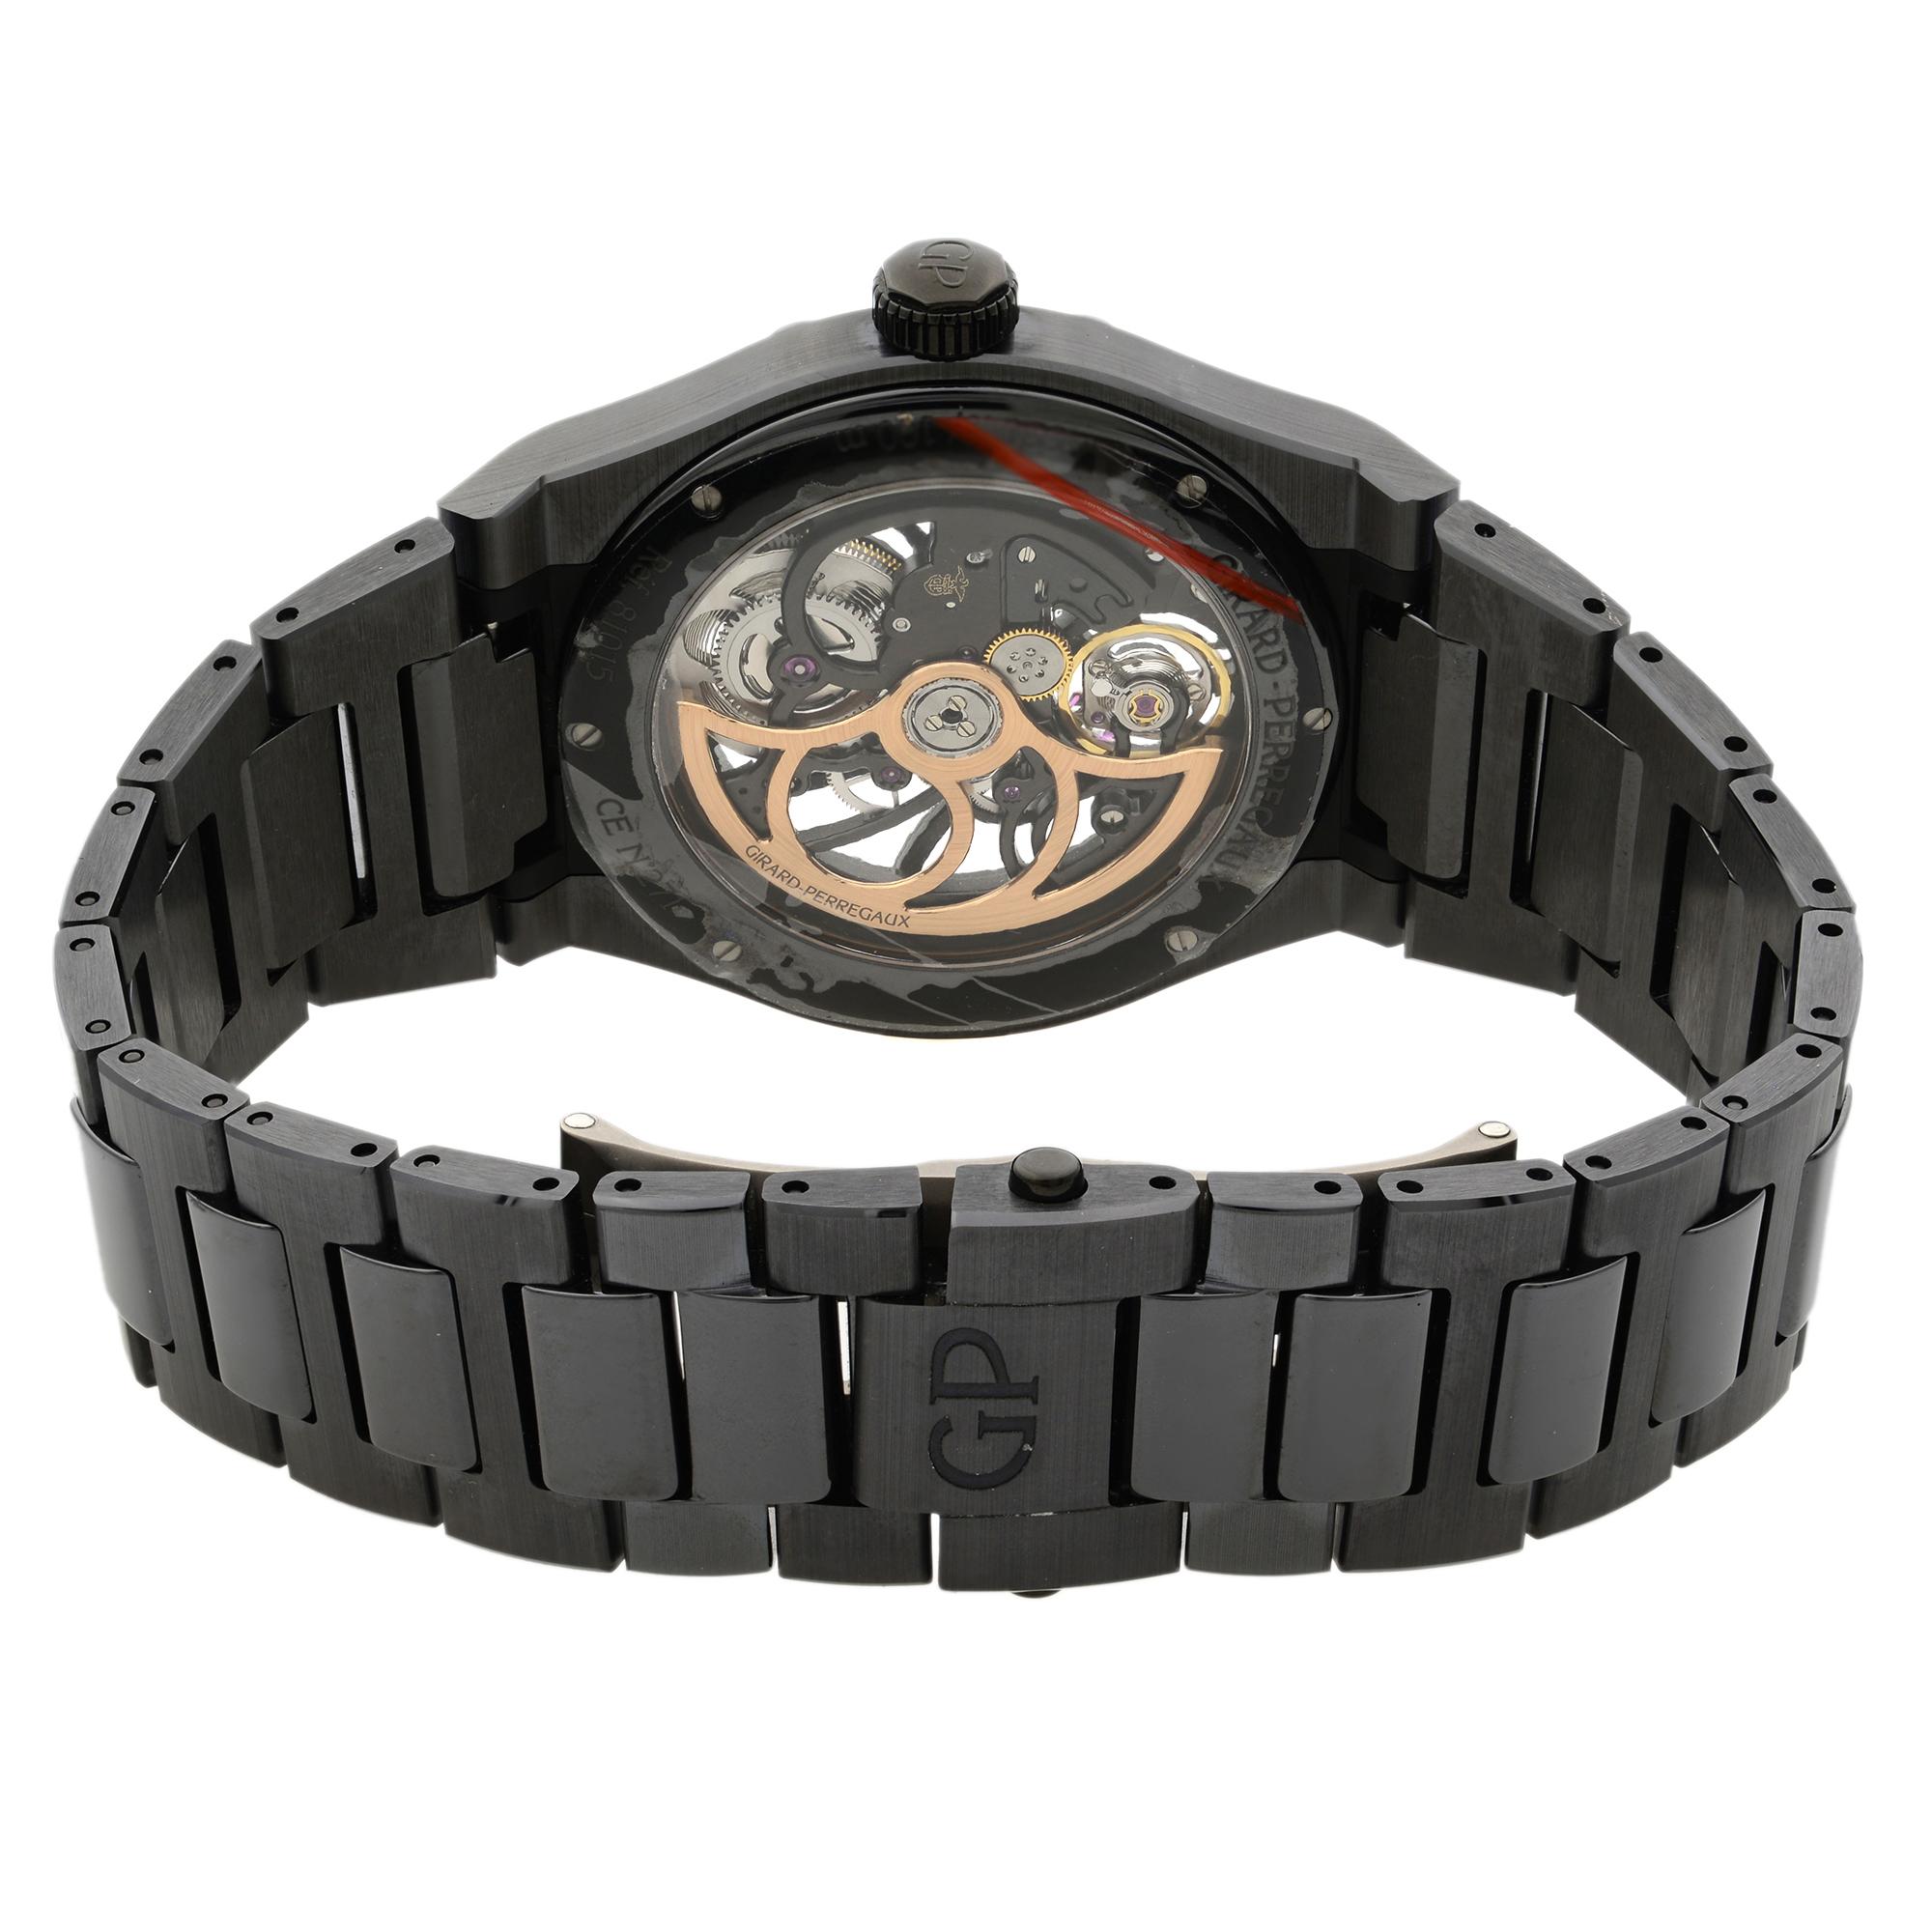 laureato chronograph automatic blue dial men's watch